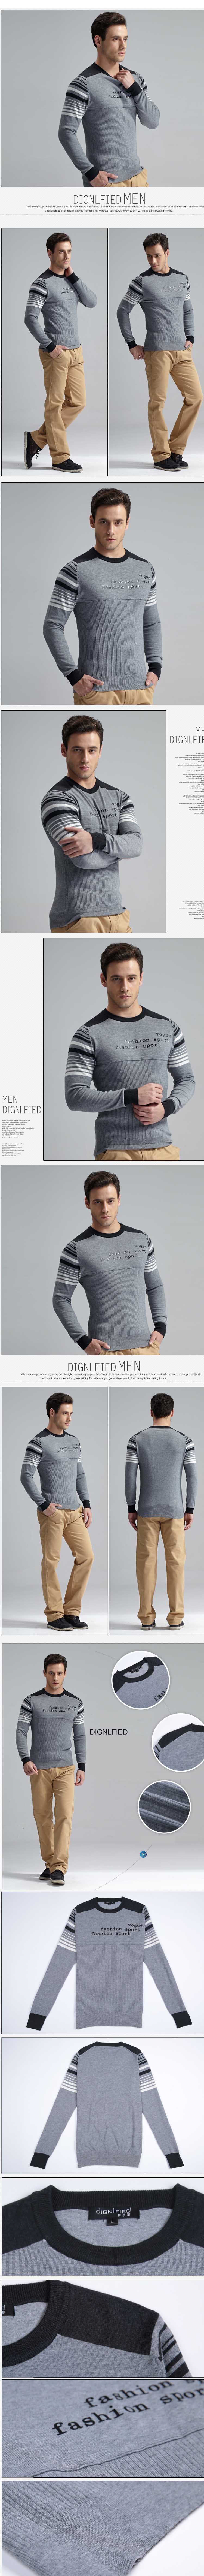 jual sweater rajut pria model terbaru, temukan koleksi sweater pria model rajut lain nya hanya di store.pakaianfashionpria.com